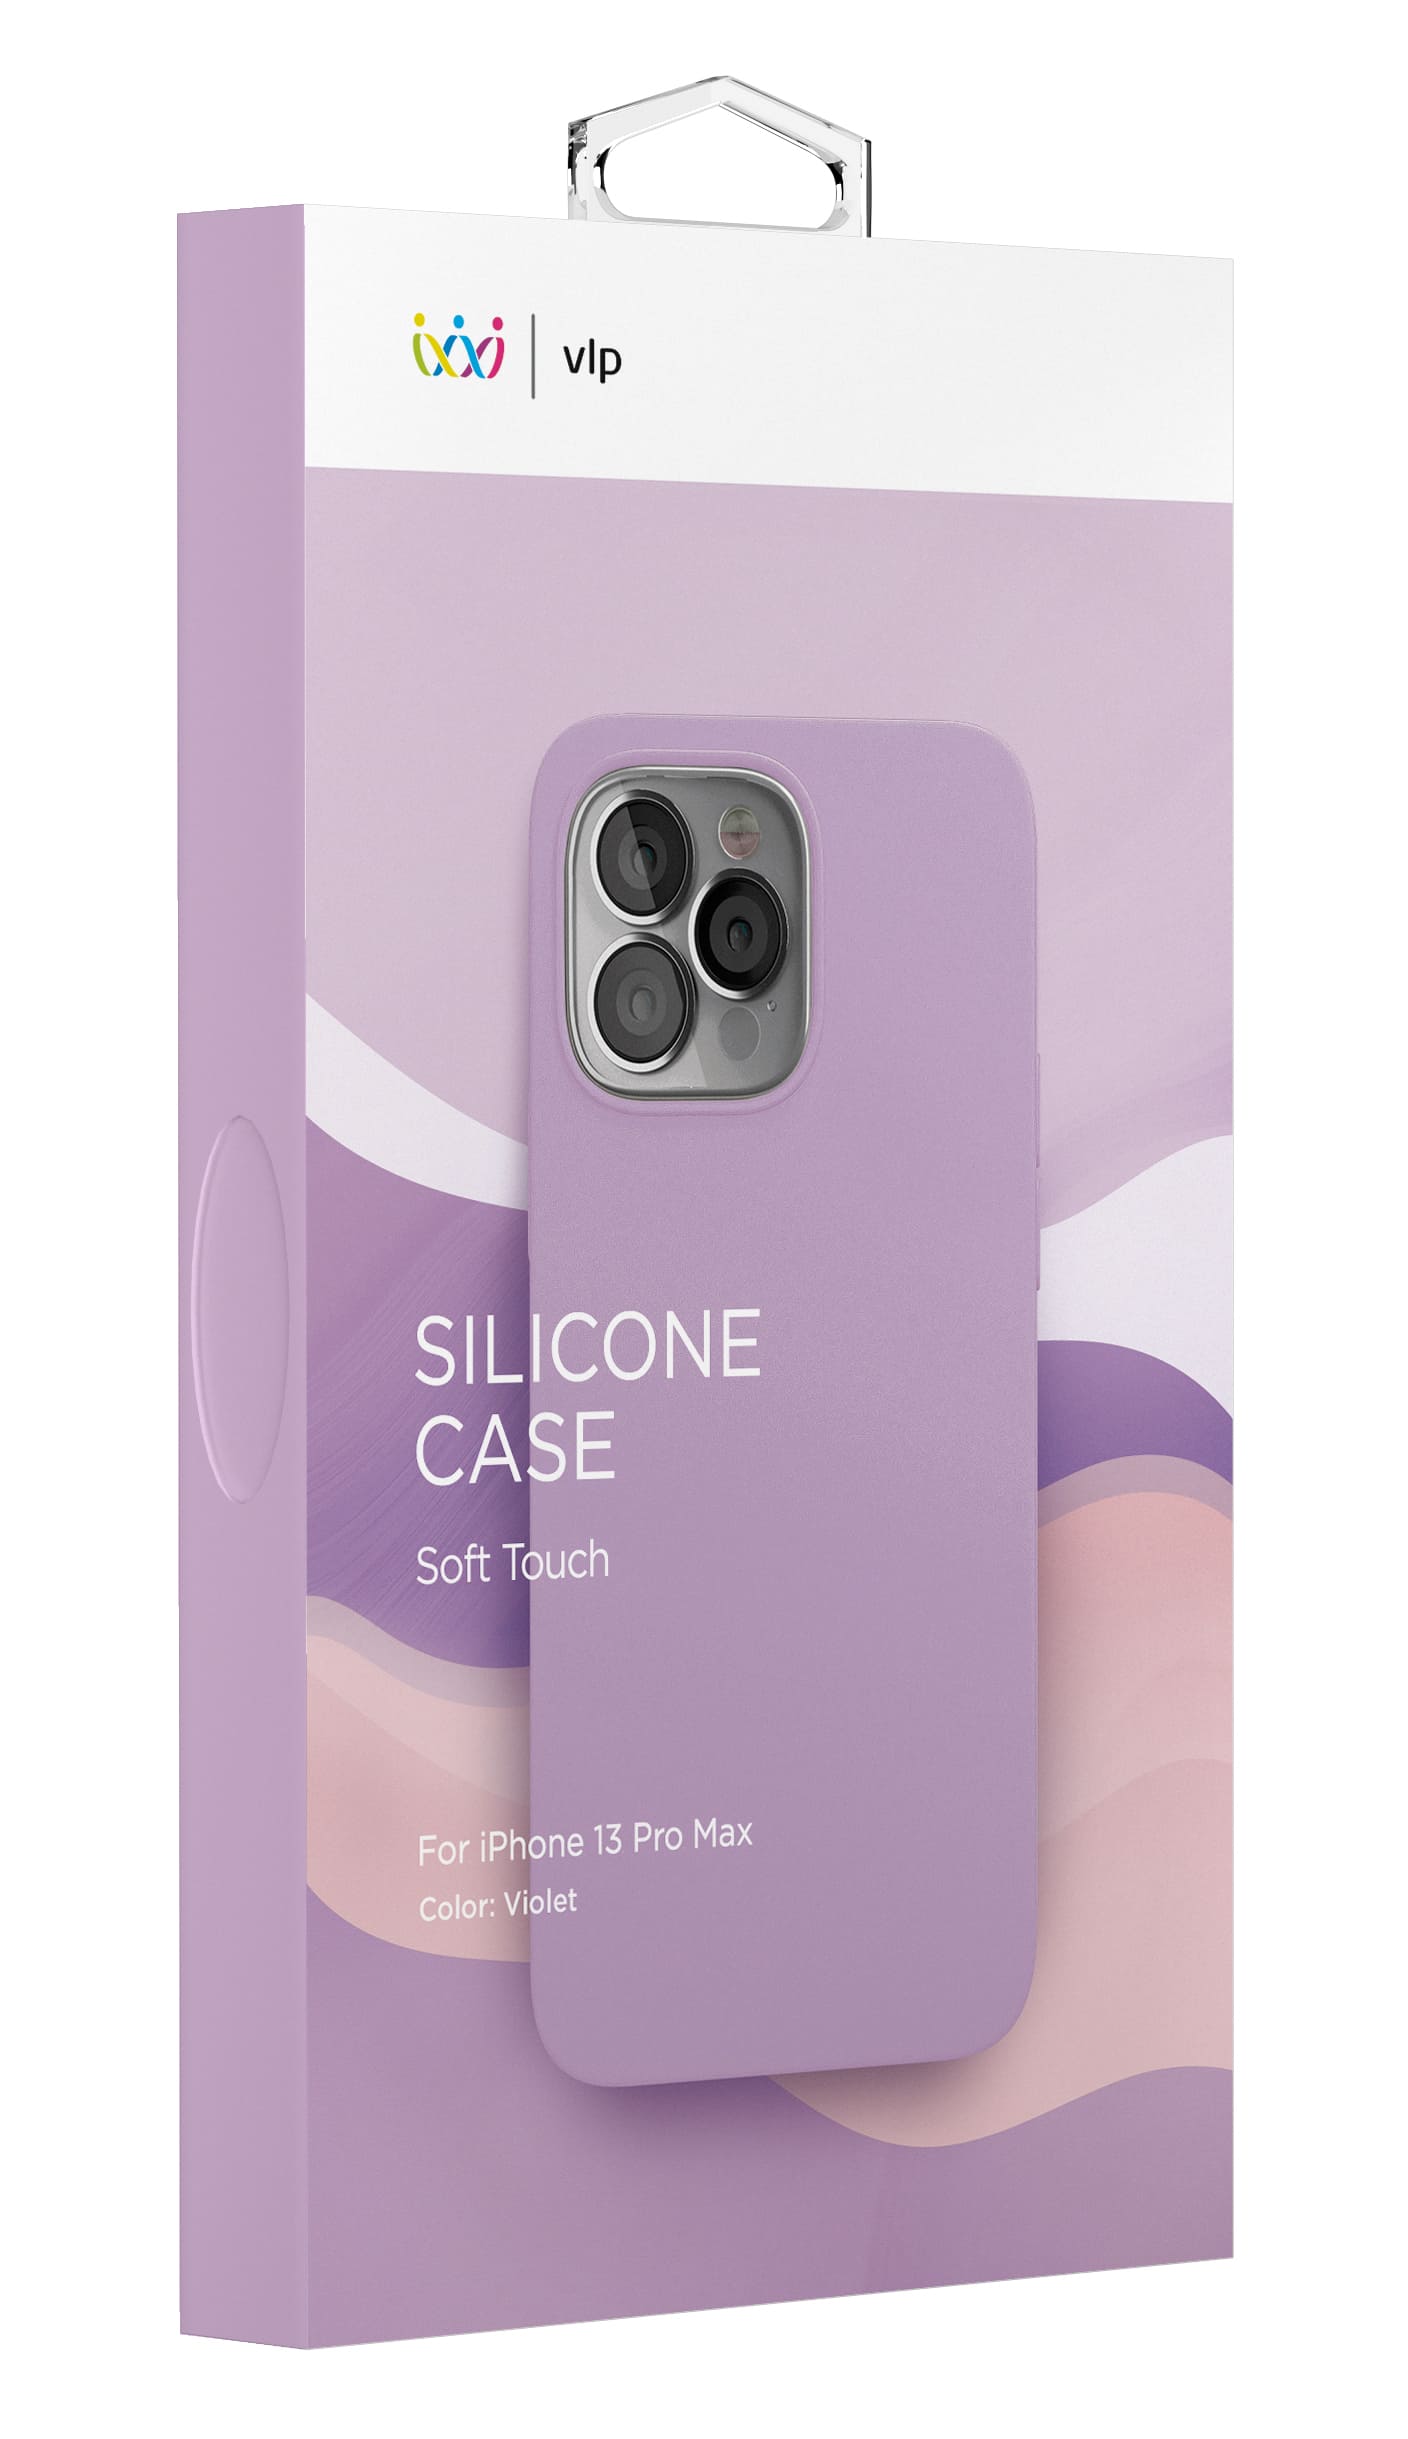 Фото — Чехол защитный vlp Silicone case with MagSafe для iPhone 13 Pro Max, фиолетовый